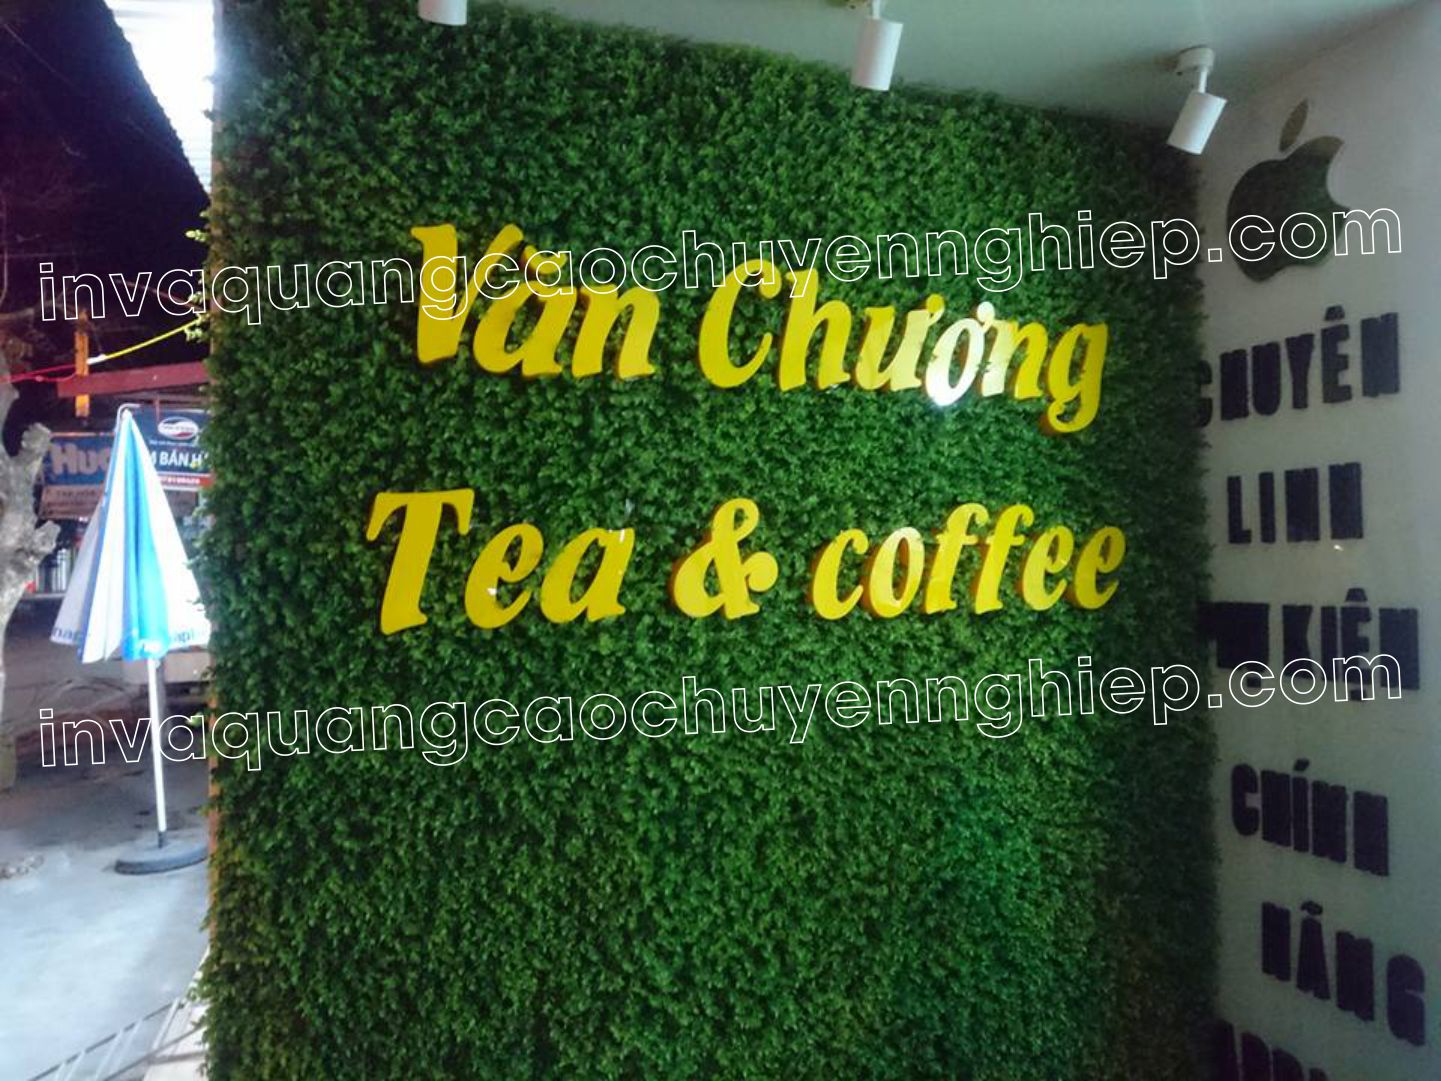 biển quảng cáo chữ nổi mica vách logo văn chương tea & coffee